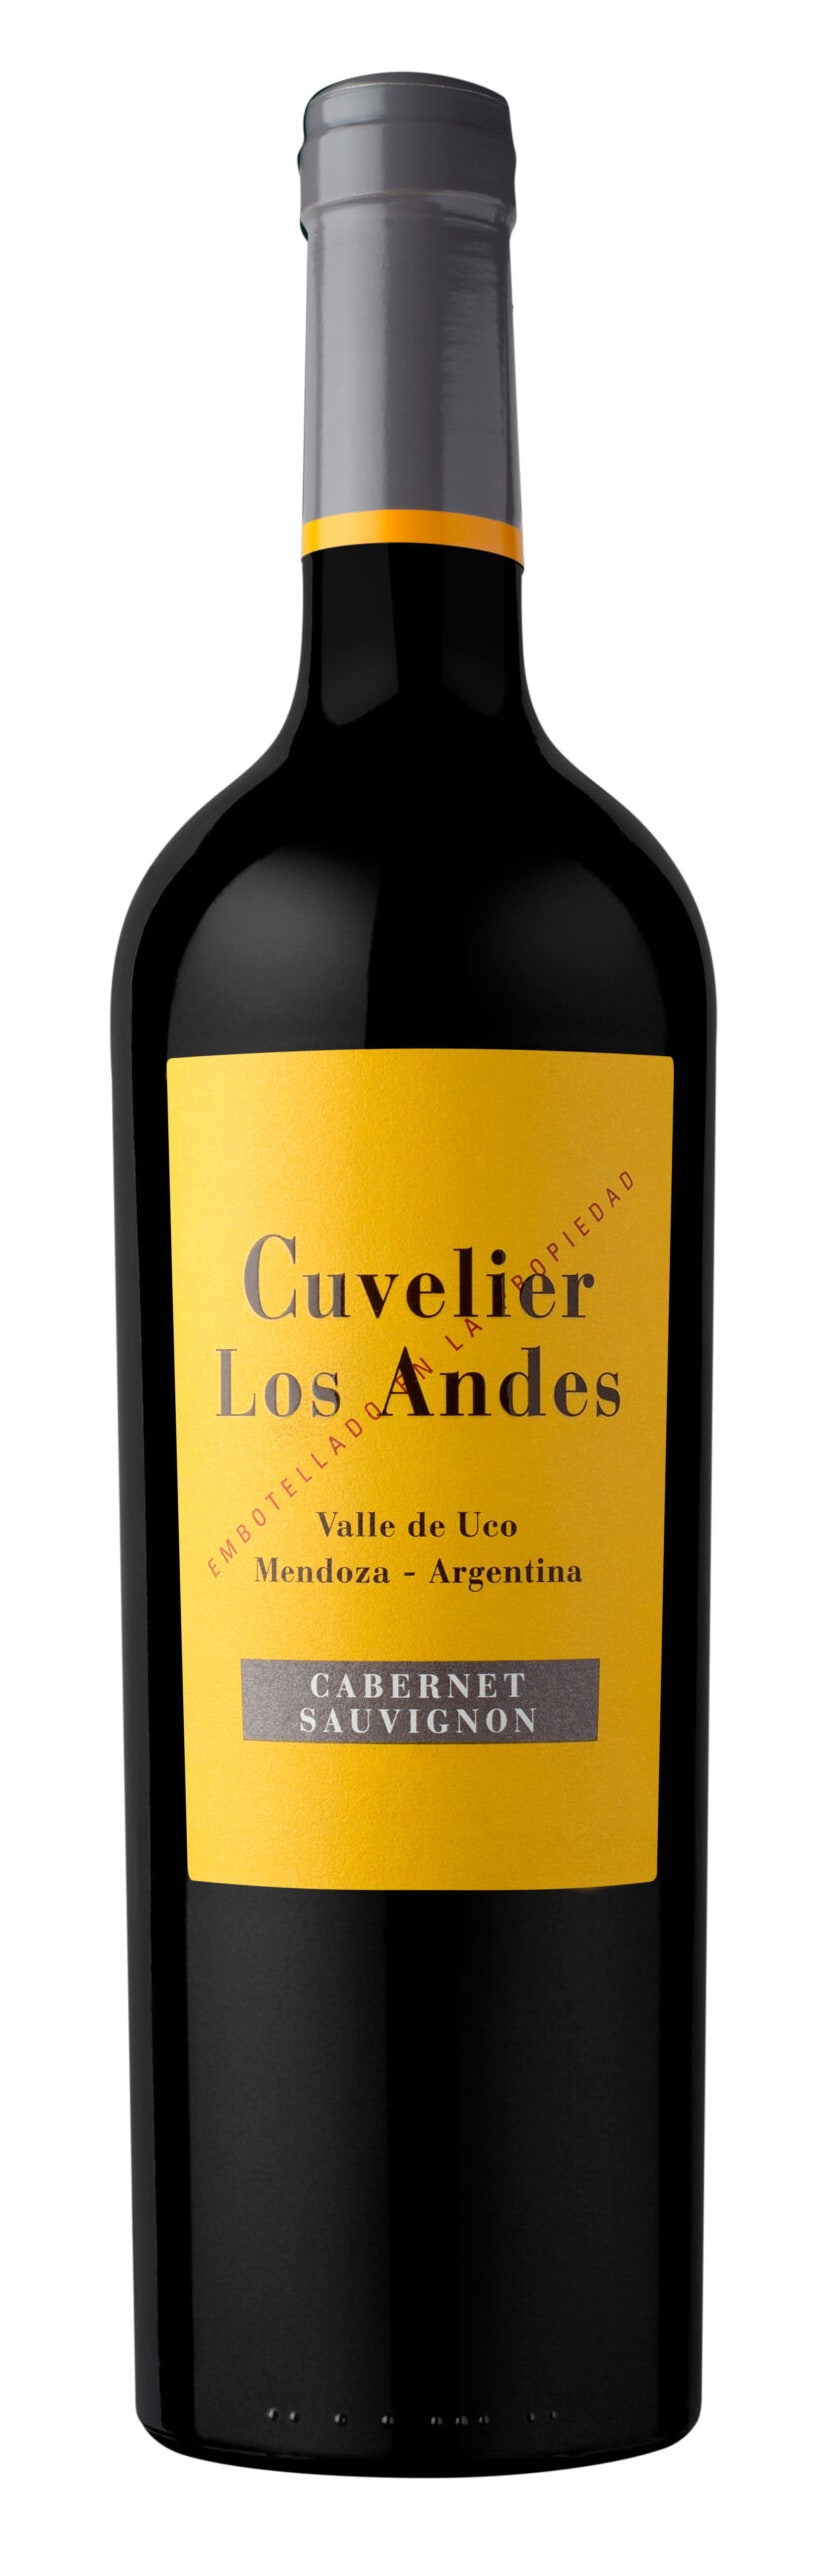 Cuvelier Los Andes - Cabernet Sauvignon 2018 (750)